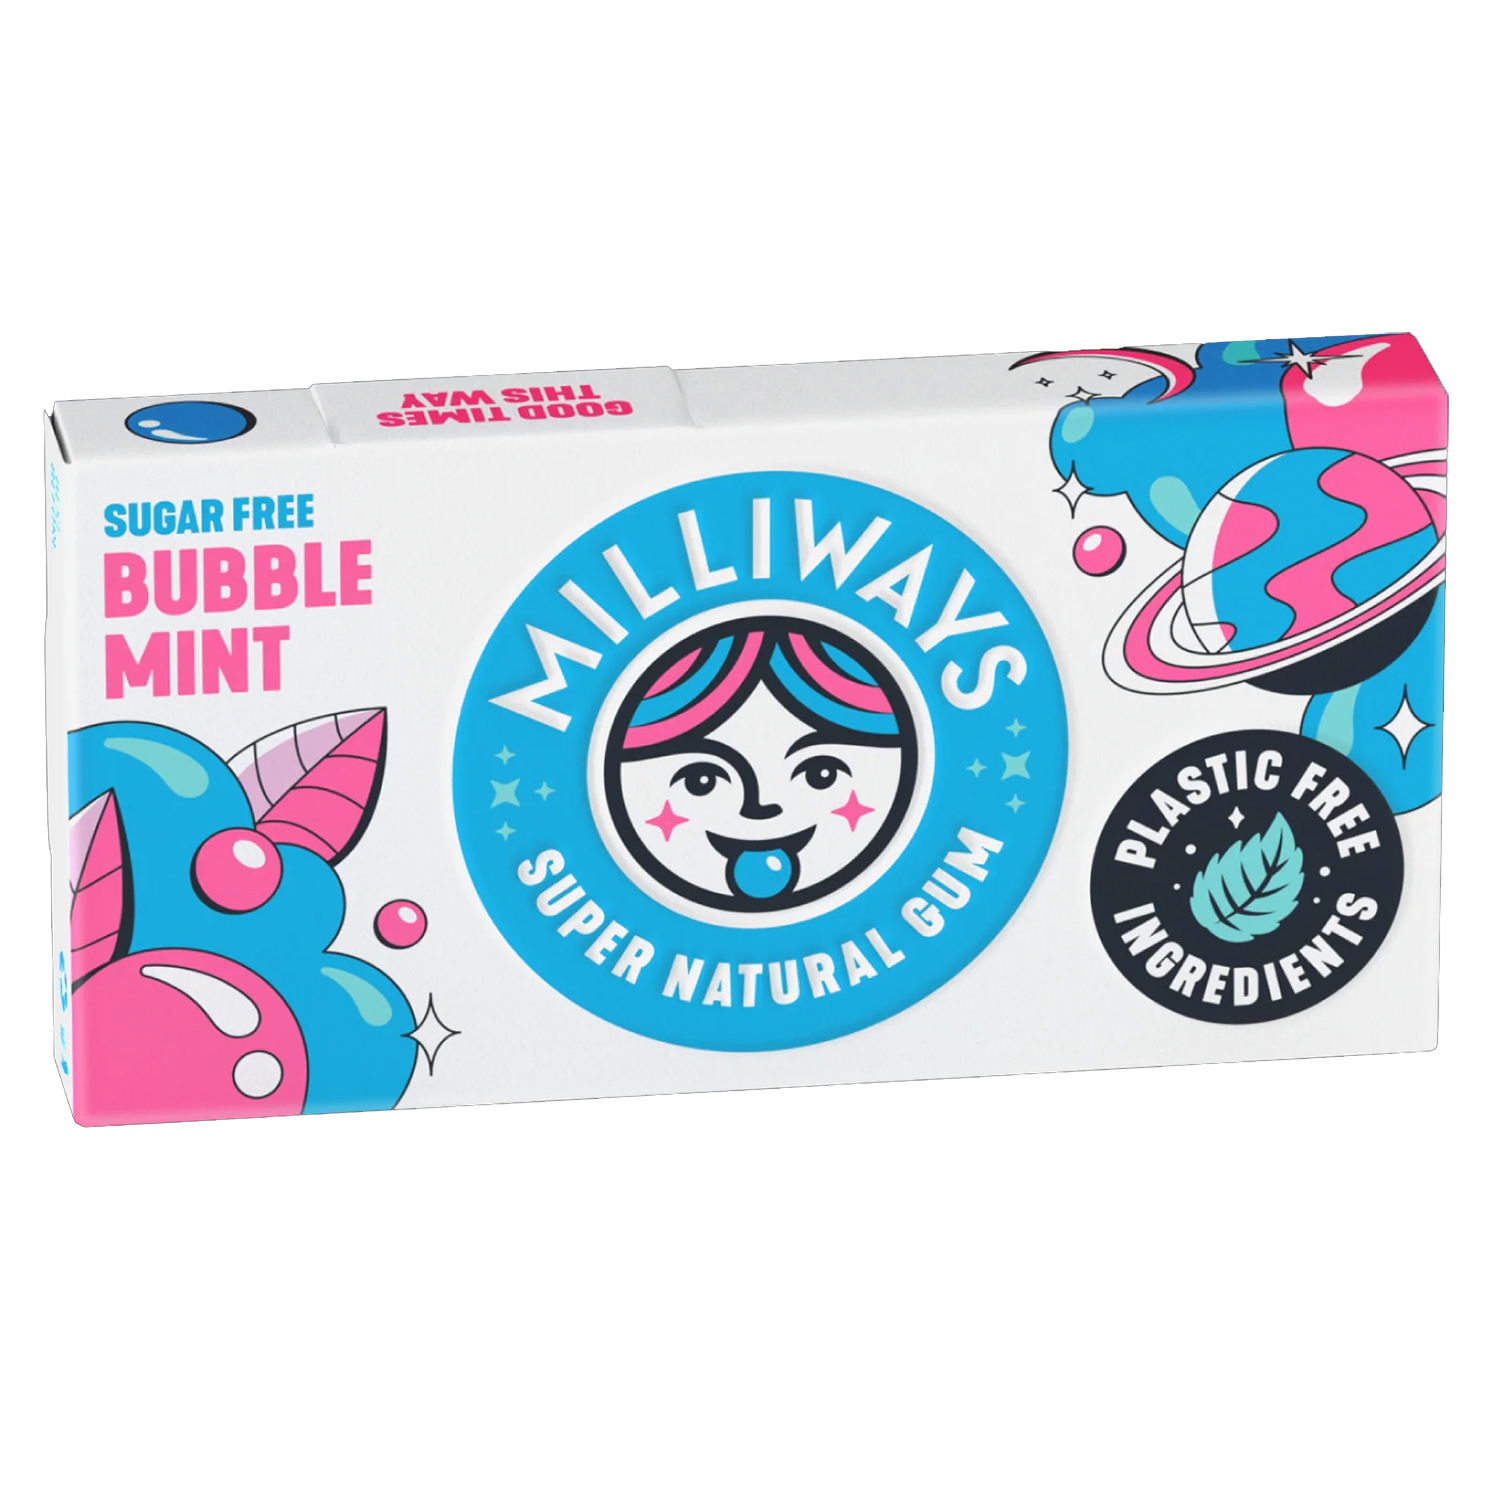 Milliways Bubble Mint Plastic Free Gum 19g (10 Pellets)